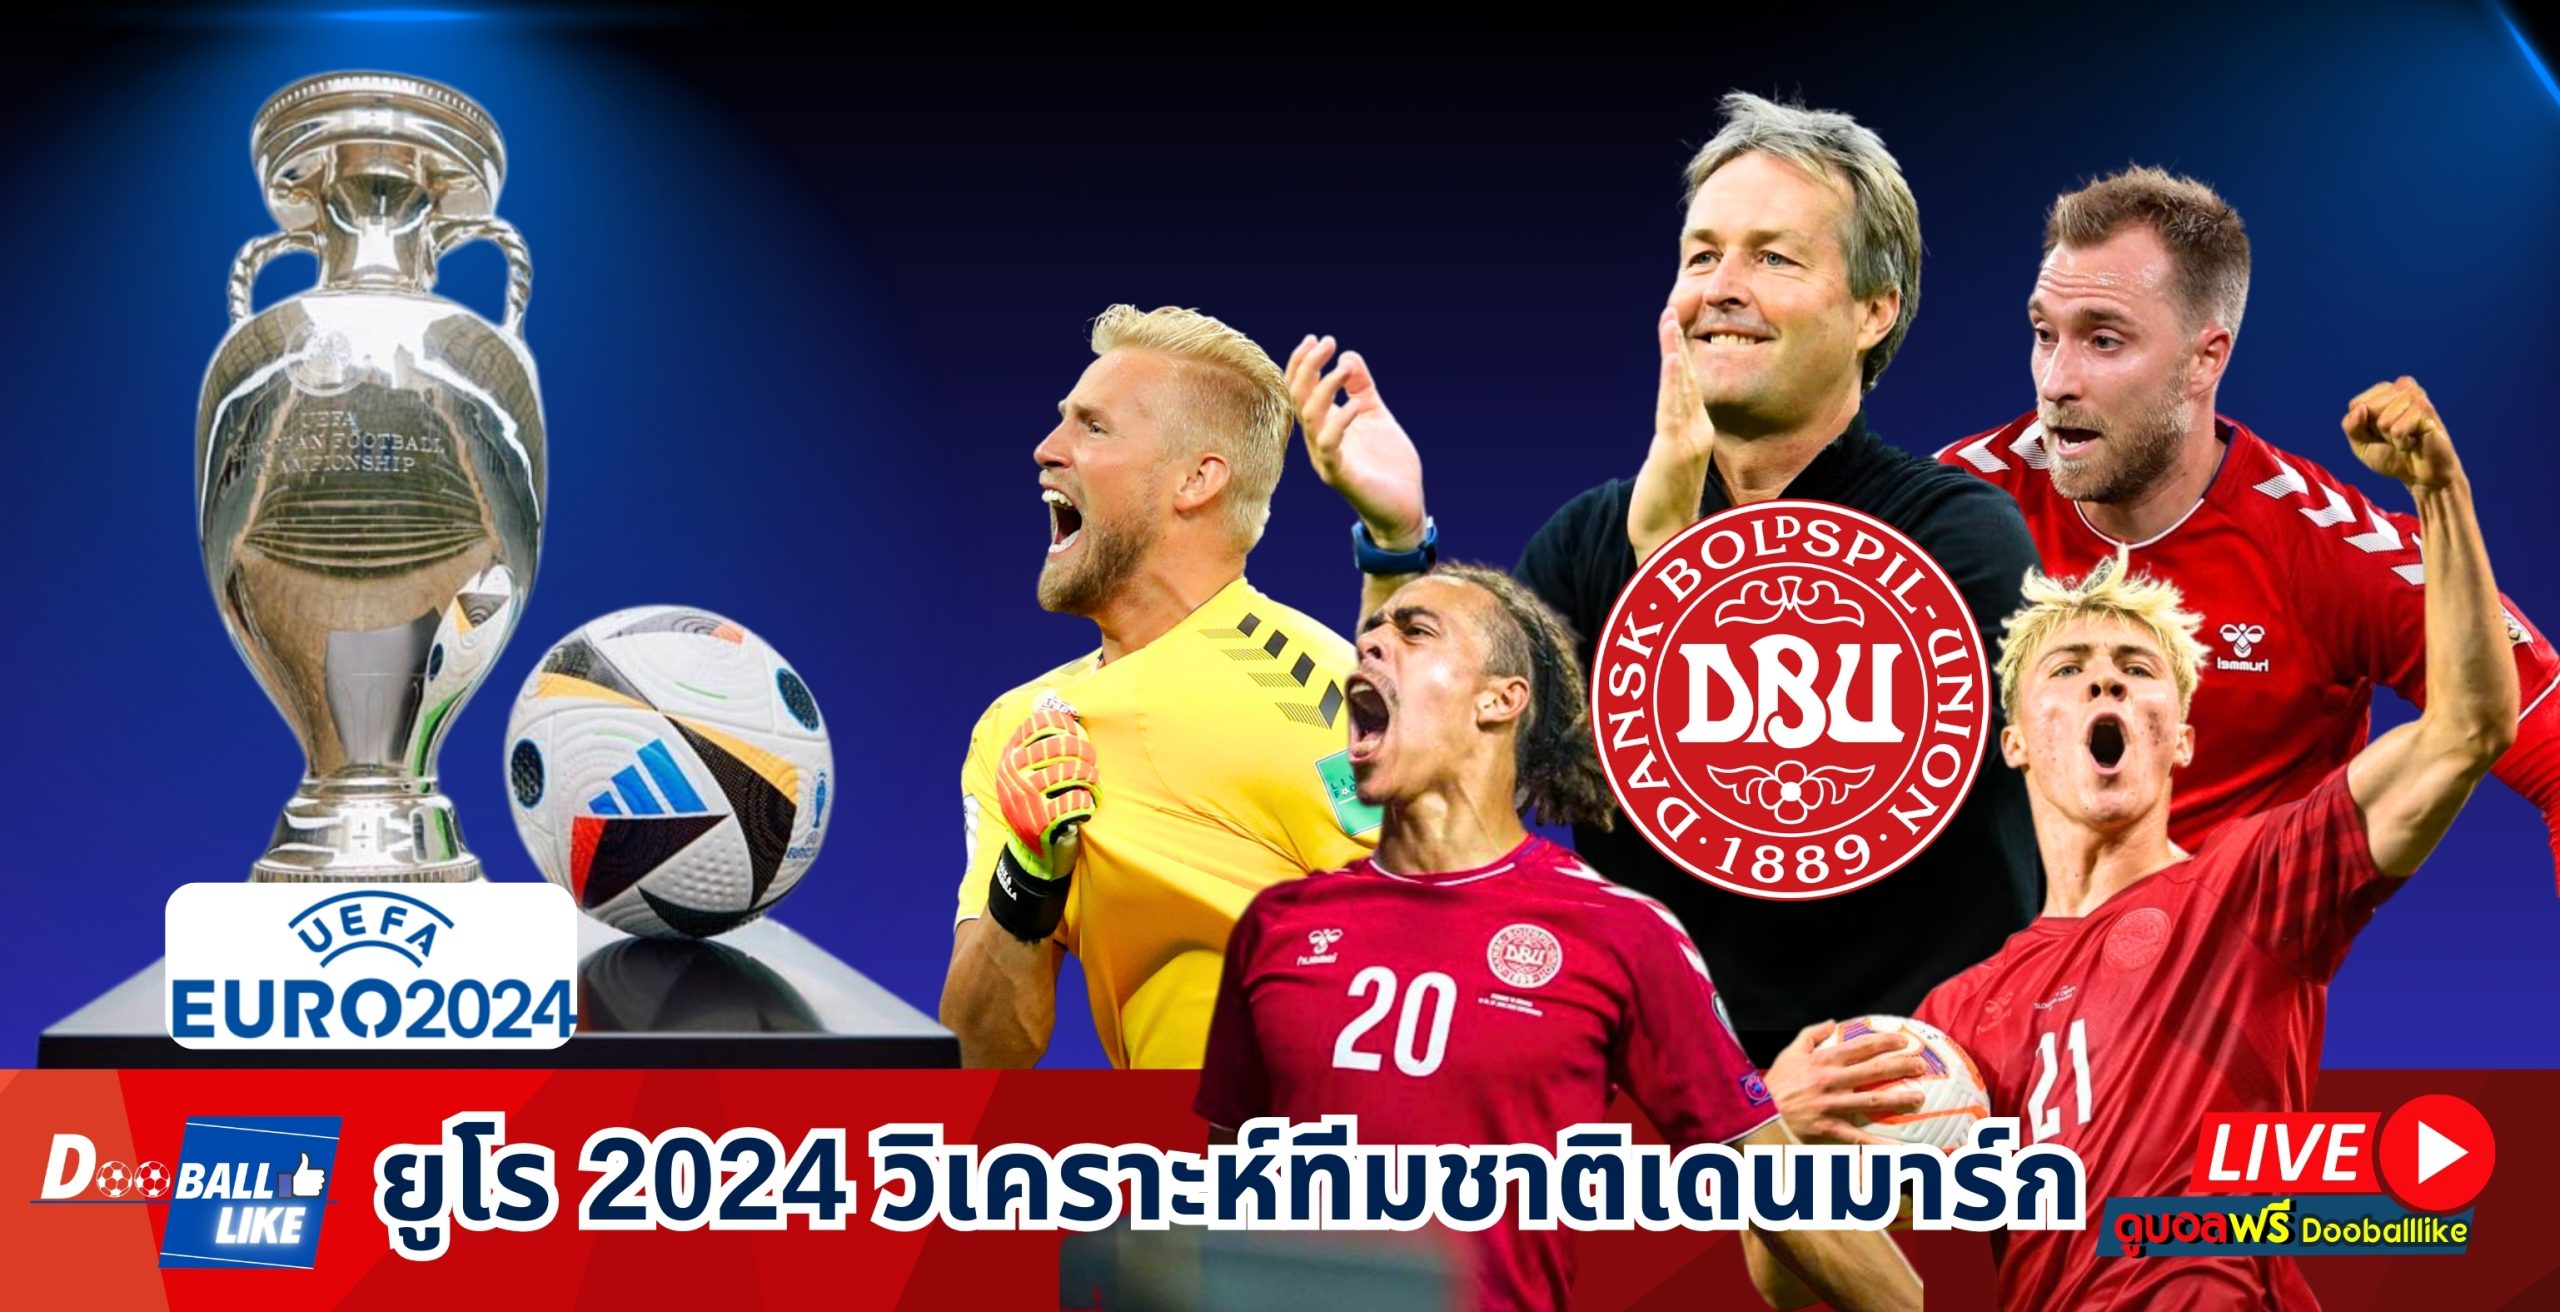 ยูโร 2024 วิเคราะห์ทีมชาติเดนมาร์ก : โปรแกรมแข่งขัน สถิติ โค้ชปัจจุบัน